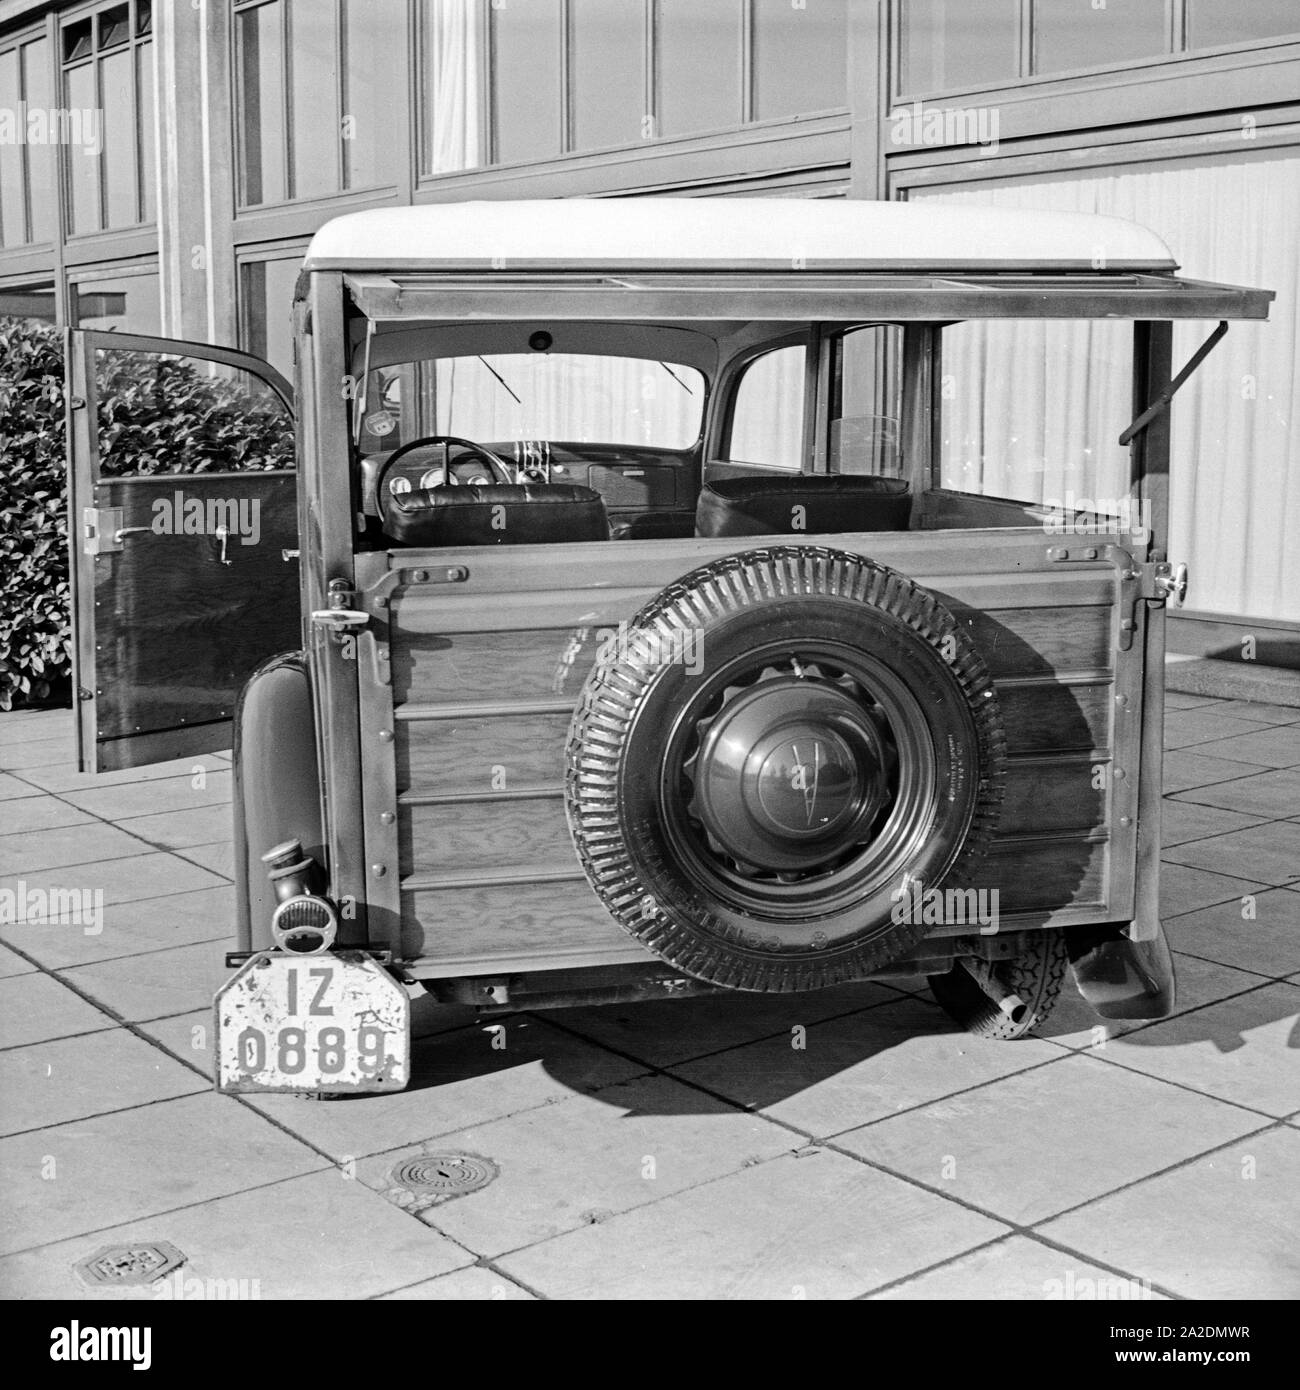 Ford V8 Ein Modell 68 Holzverkeidung Firmenzentrale mit der vor der Ford Werke in Köln Niehl, Deutschland 1930 er Jahre. Une Ford V8 Modèle 68 avec des feuilles de bois en face de l'administration centrale Ford allemand à Cologne, Allemagne 1930. Banque D'Images